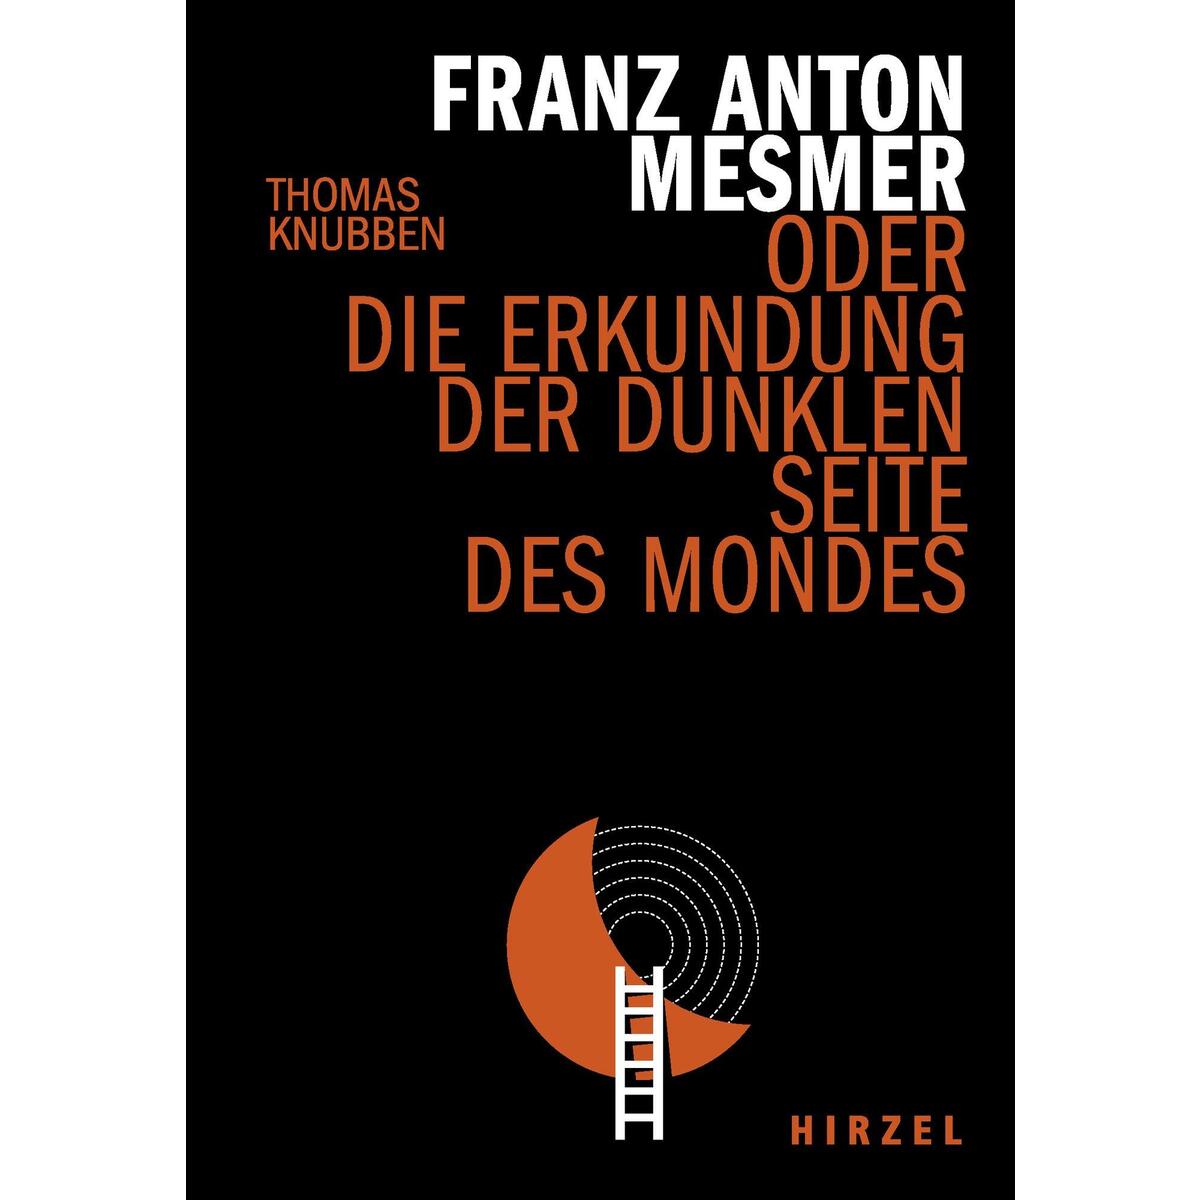 Franz Anton Mesmer von Hirzel S. Verlag